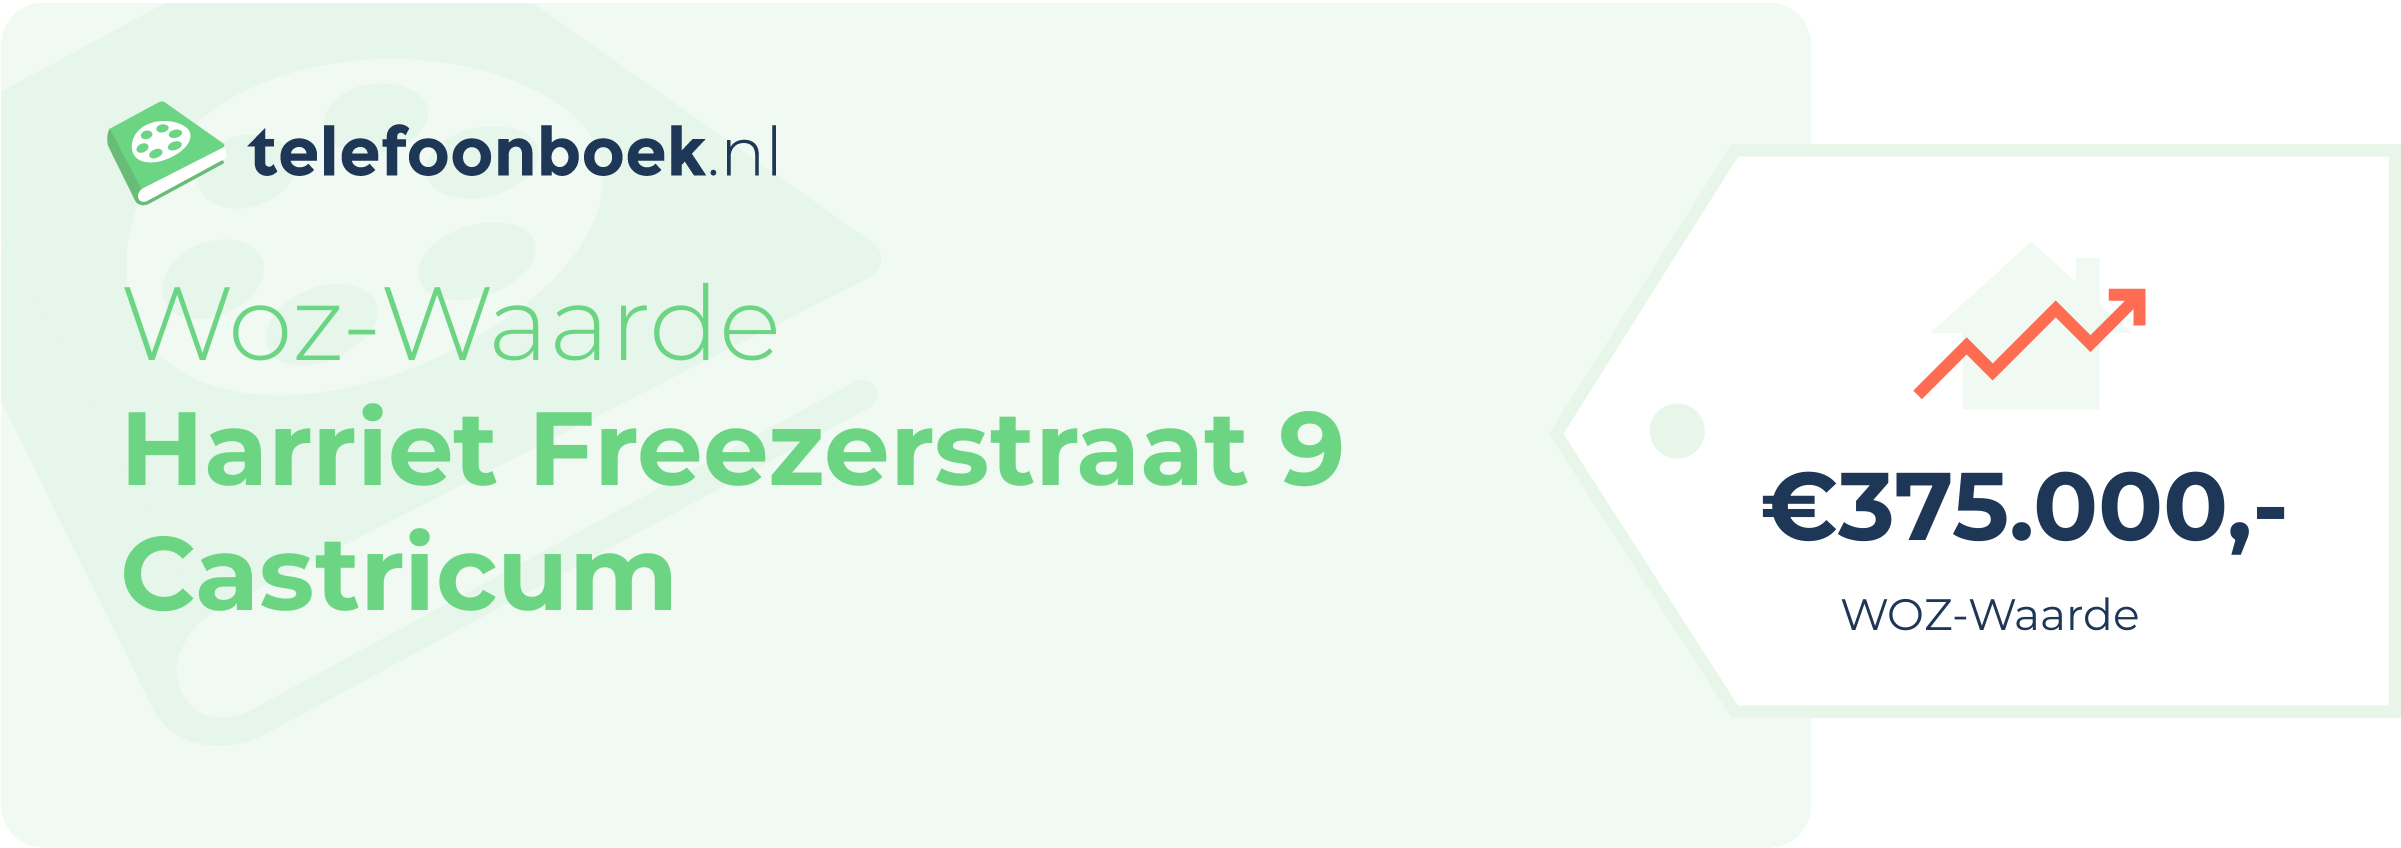 WOZ-waarde Harriet Freezerstraat 9 Castricum